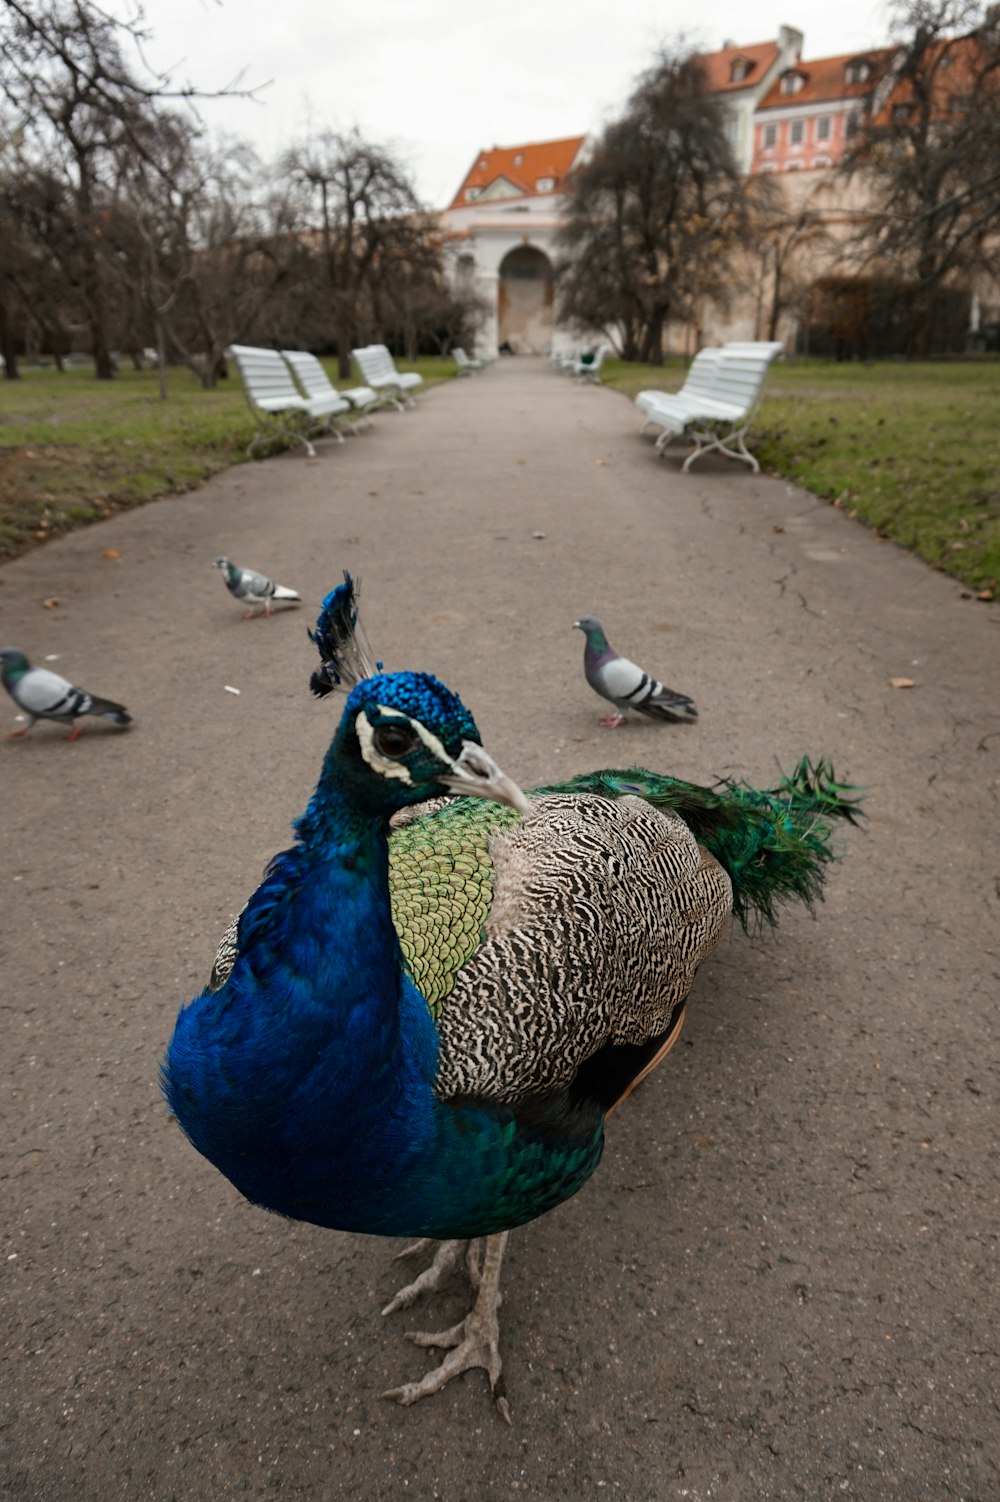 peacock photograph